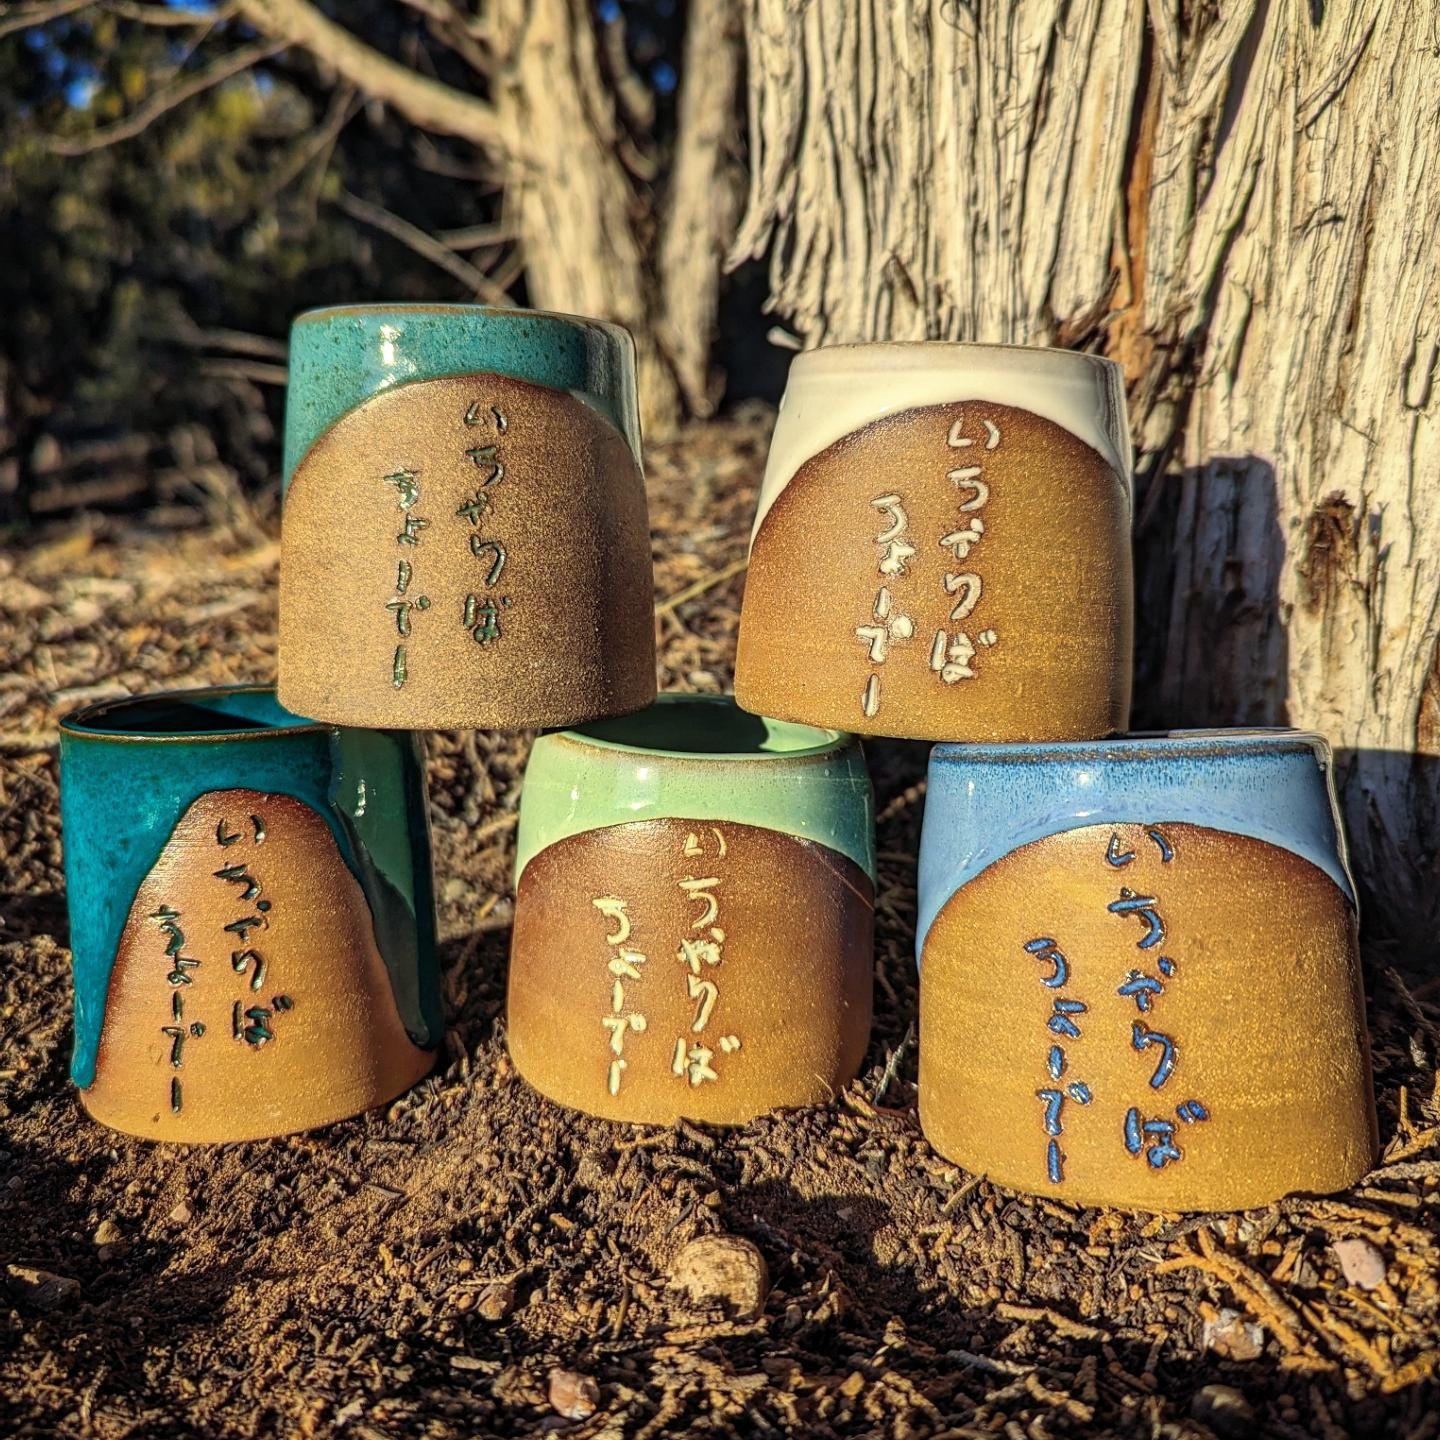 いちゃりばちょーでー 🌺
Icharibachoodee 
An Okinawan proverb which means, &quot;when we meet we become family&quot; 
Colorful tumblers and mugs made special for the 5th Annual OKINAWAN CRAFT FAIR 沖縄クラフト・フェア

APRIL 27 (SATURDAY)
9 a.m. - 2 p.m.
OAA Center's Par